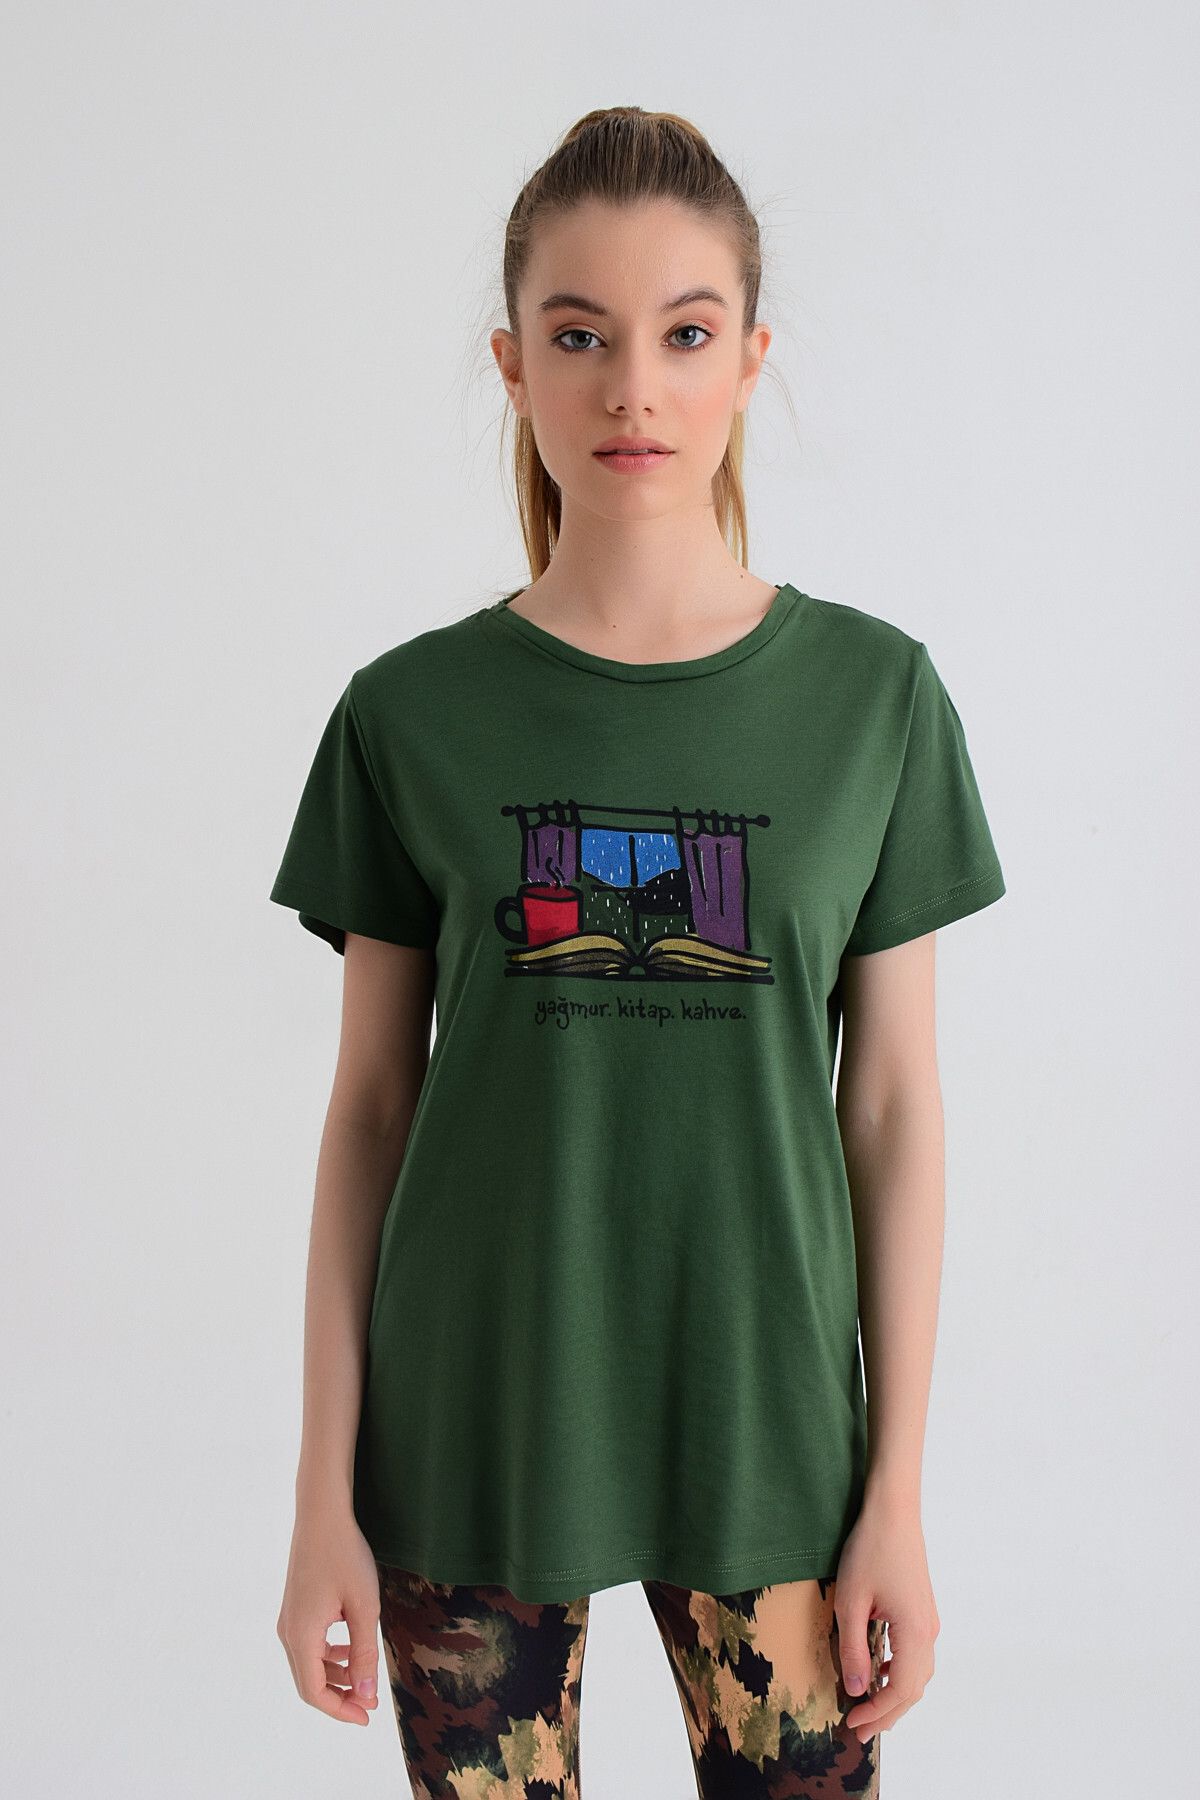 b-fit Kadın T-shirt - Wormie Yağmur-Kitap-Kahve - WRMYYKH